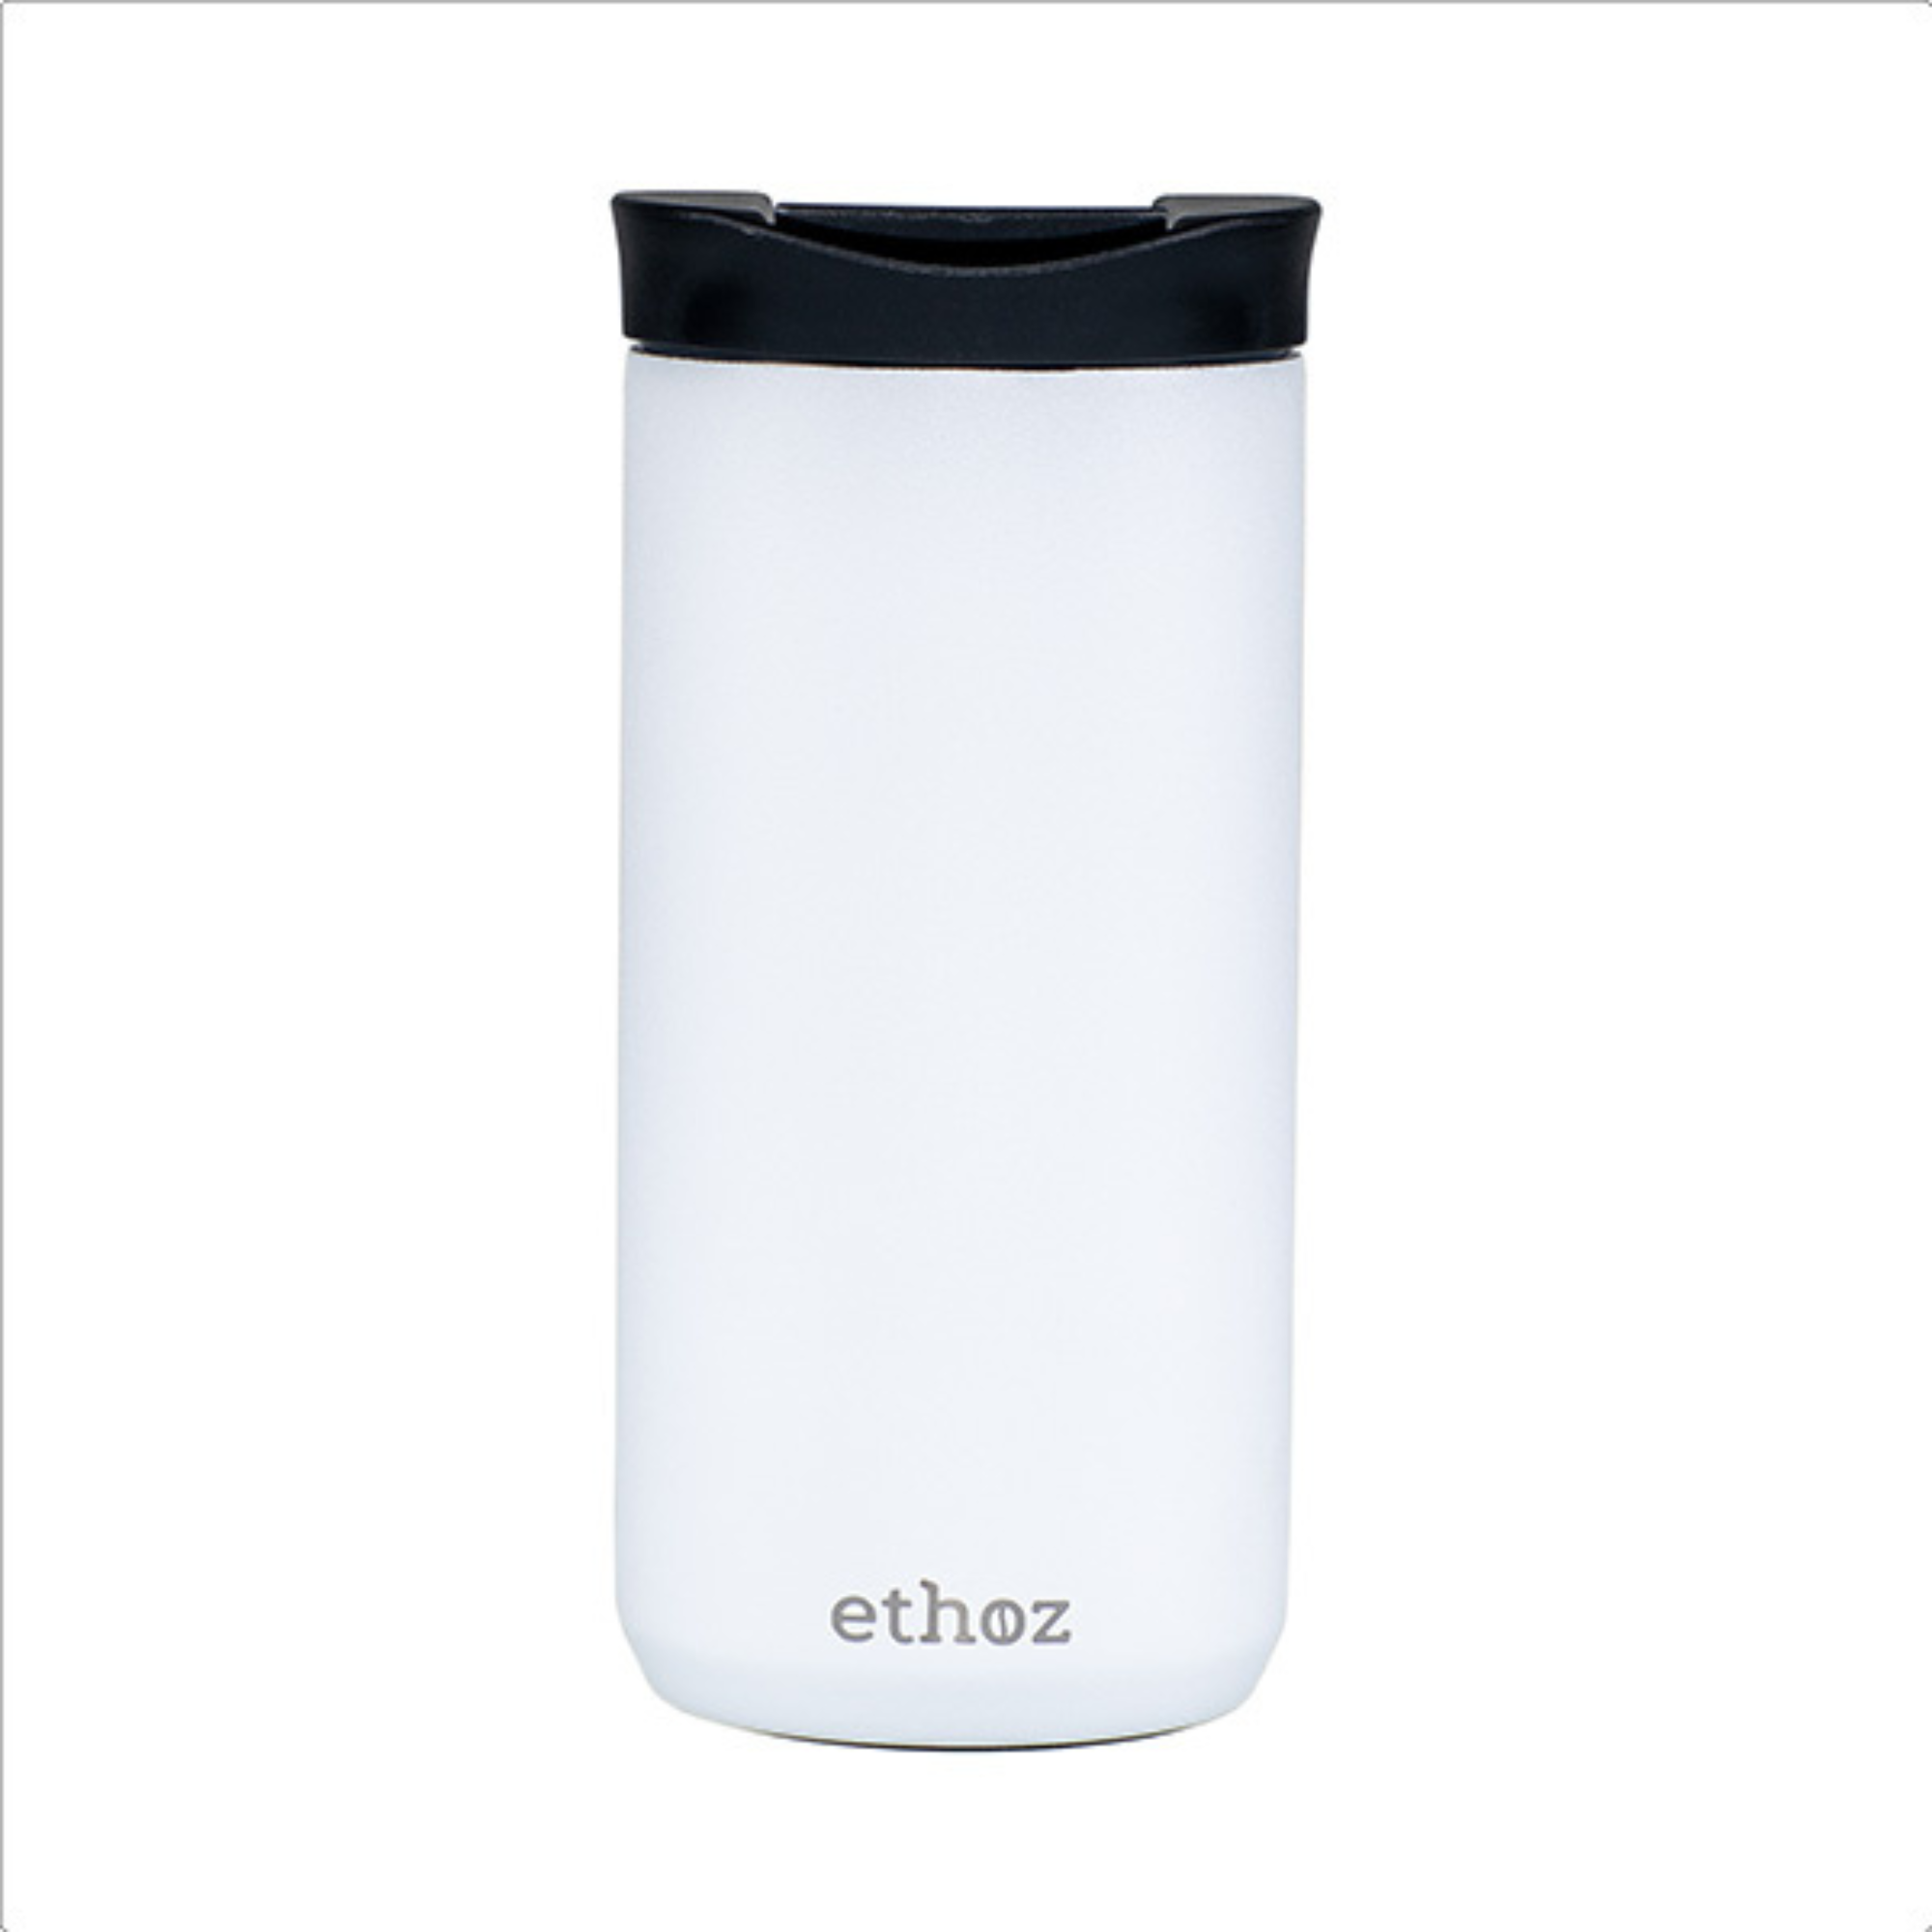 white travel mug showing ethoz brand